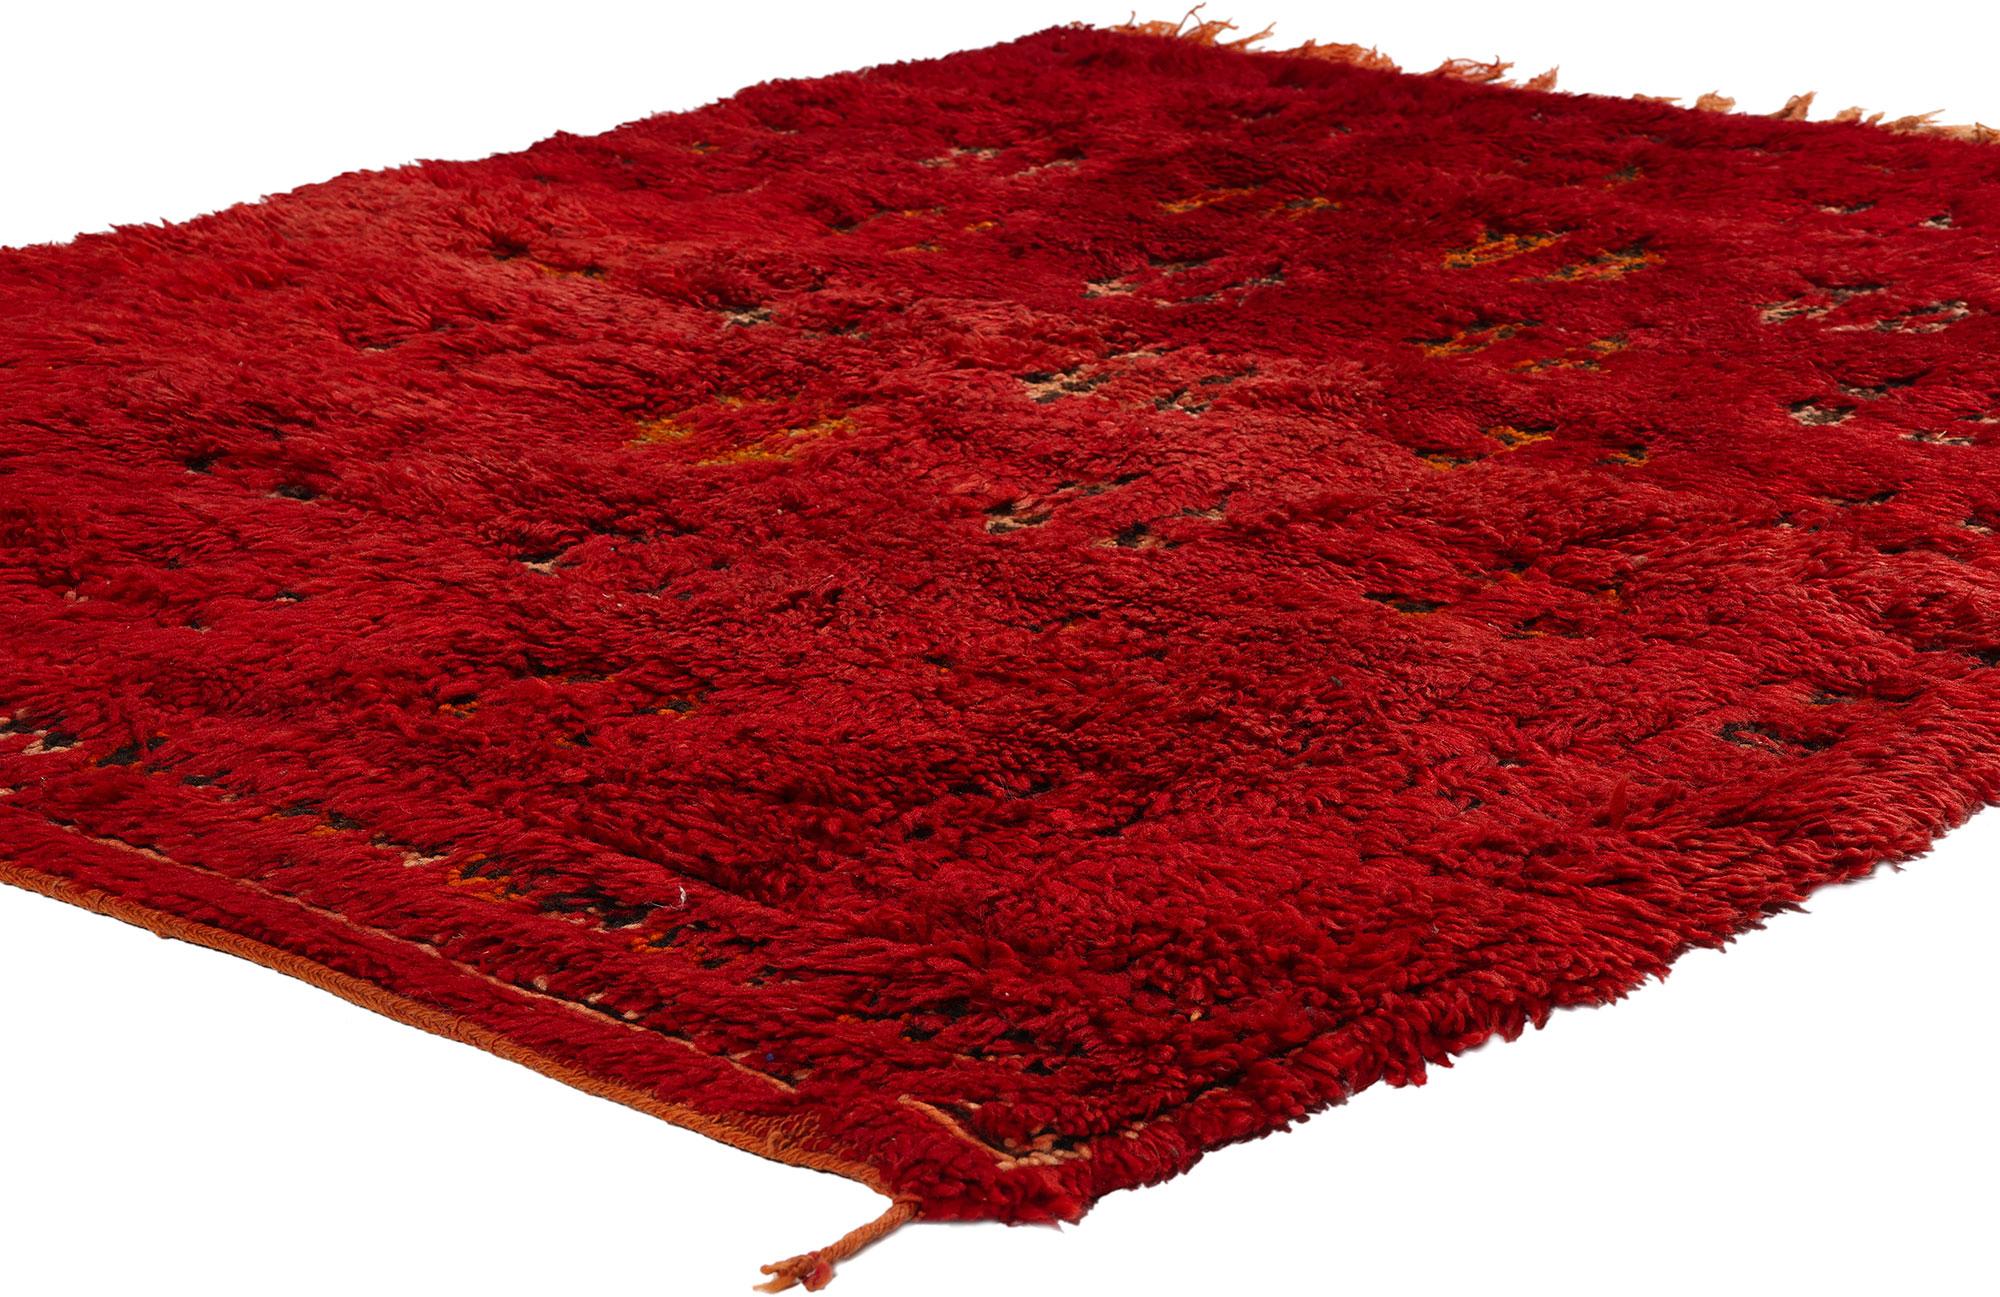 21796 Vintage Rot Beni MGuild Marokkanischer Teppich, 04'07 x 05'06. Die Beni M'Guild Rugs repräsentieren eine geschätzte Tradition des Beni M'Guild-Stammes, der im Herzen des Mittleren Atlasgebirges in Marokko lebt. Diese exquisiten Kreationen